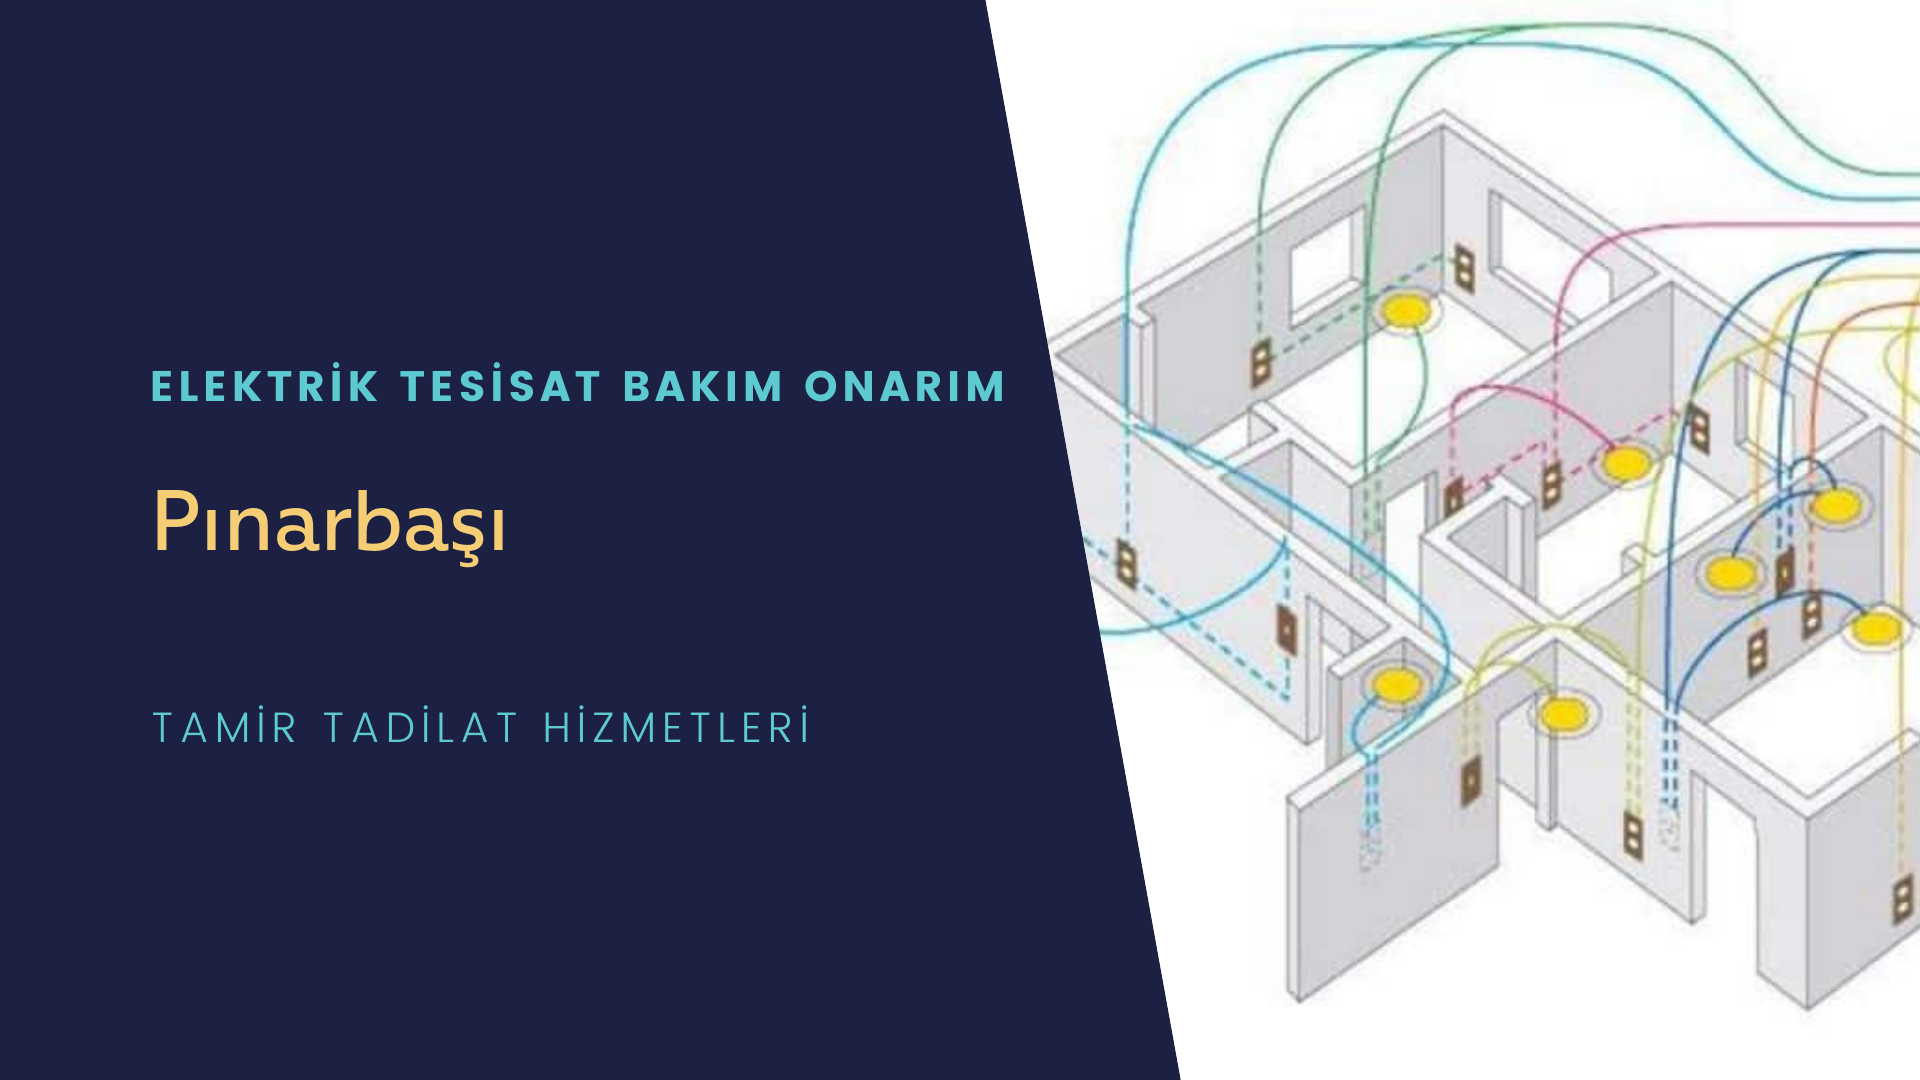 Pınarbaşı'nda elektrik tesisatı ustalarımı arıyorsunuz doğru adrestenizi Pınarbaşı elektrik tesisatı ustalarımız 7/24 sizlere hizmet vermekten mutluluk duyar.